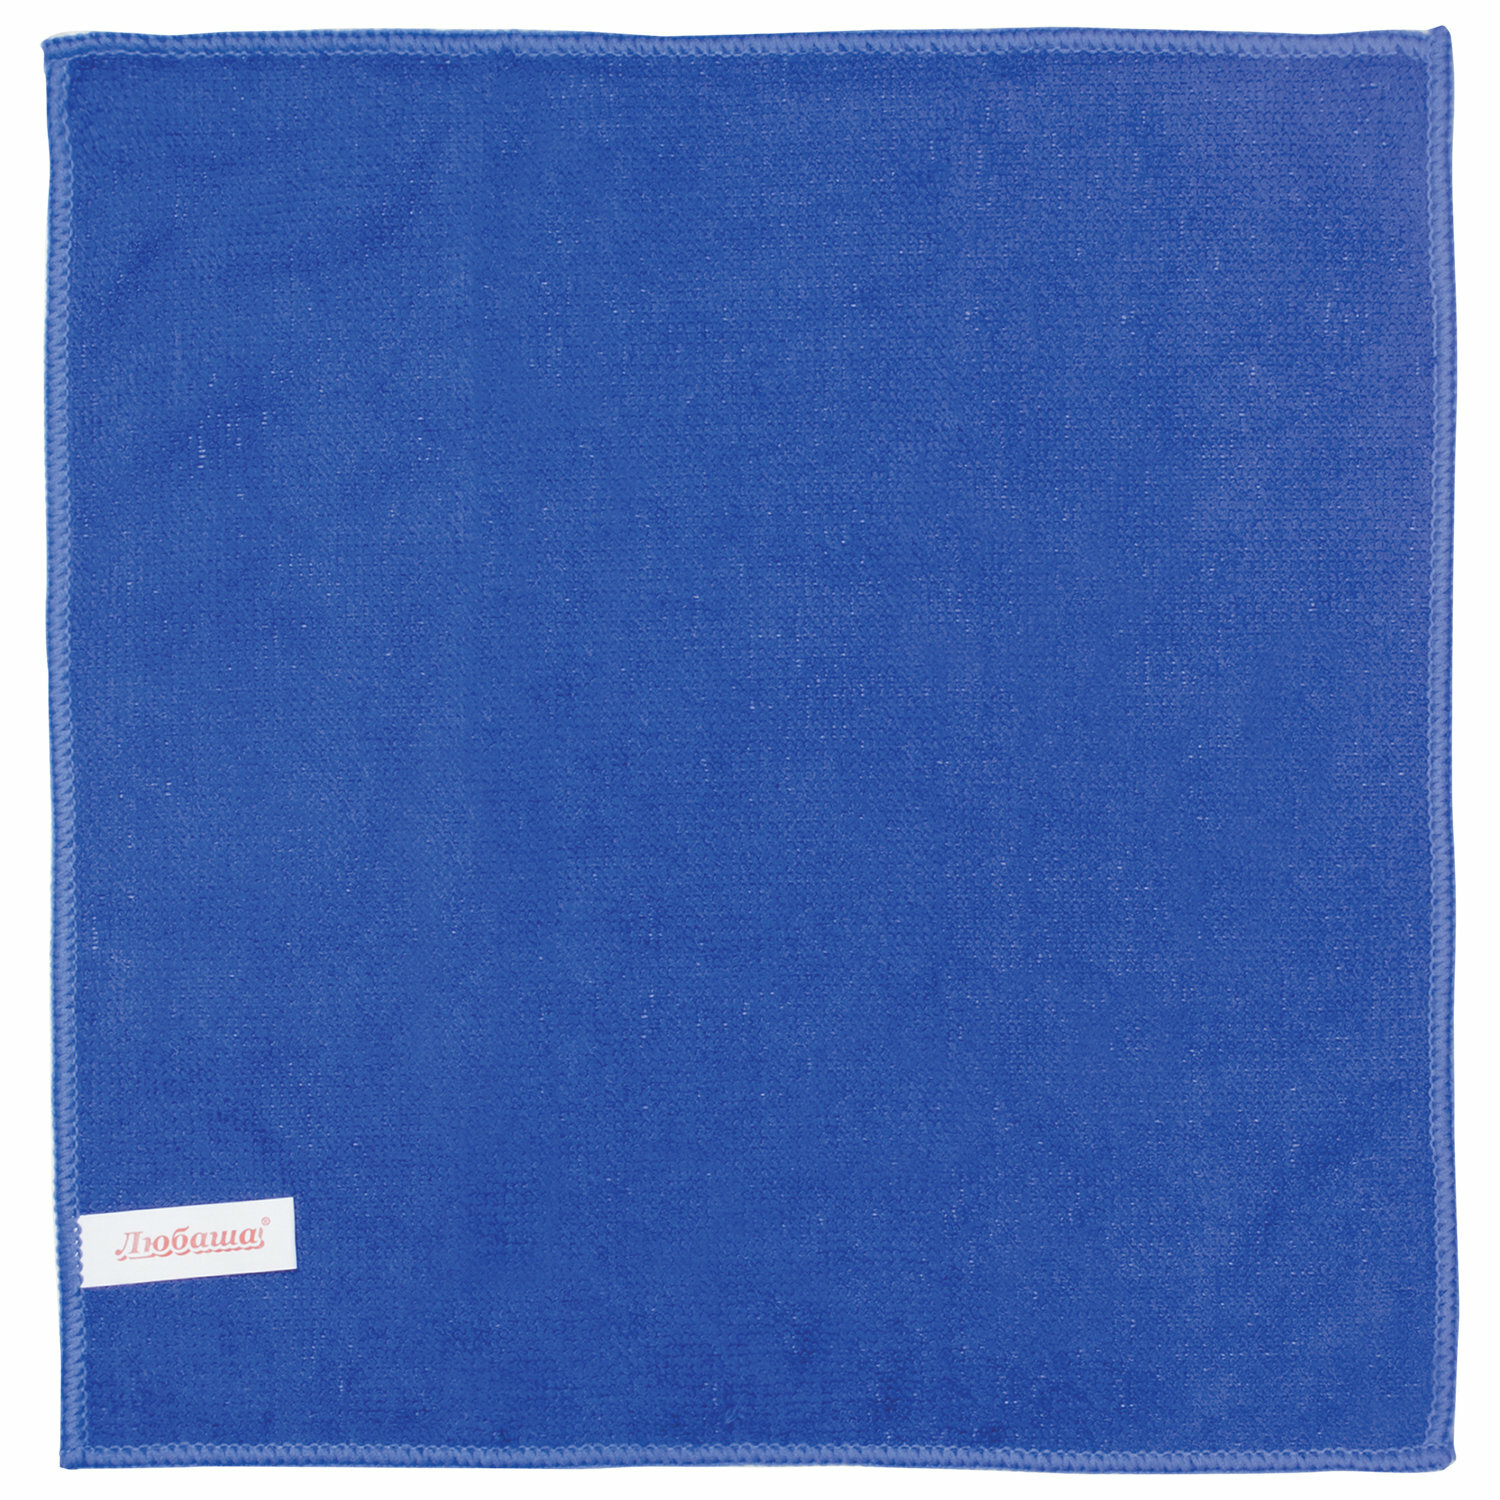 Квант продажи 4 ед. Салфетка универсальная, микрофибра, 30×30 см, синяя, любаша эконом, 603949 - фотография № 4